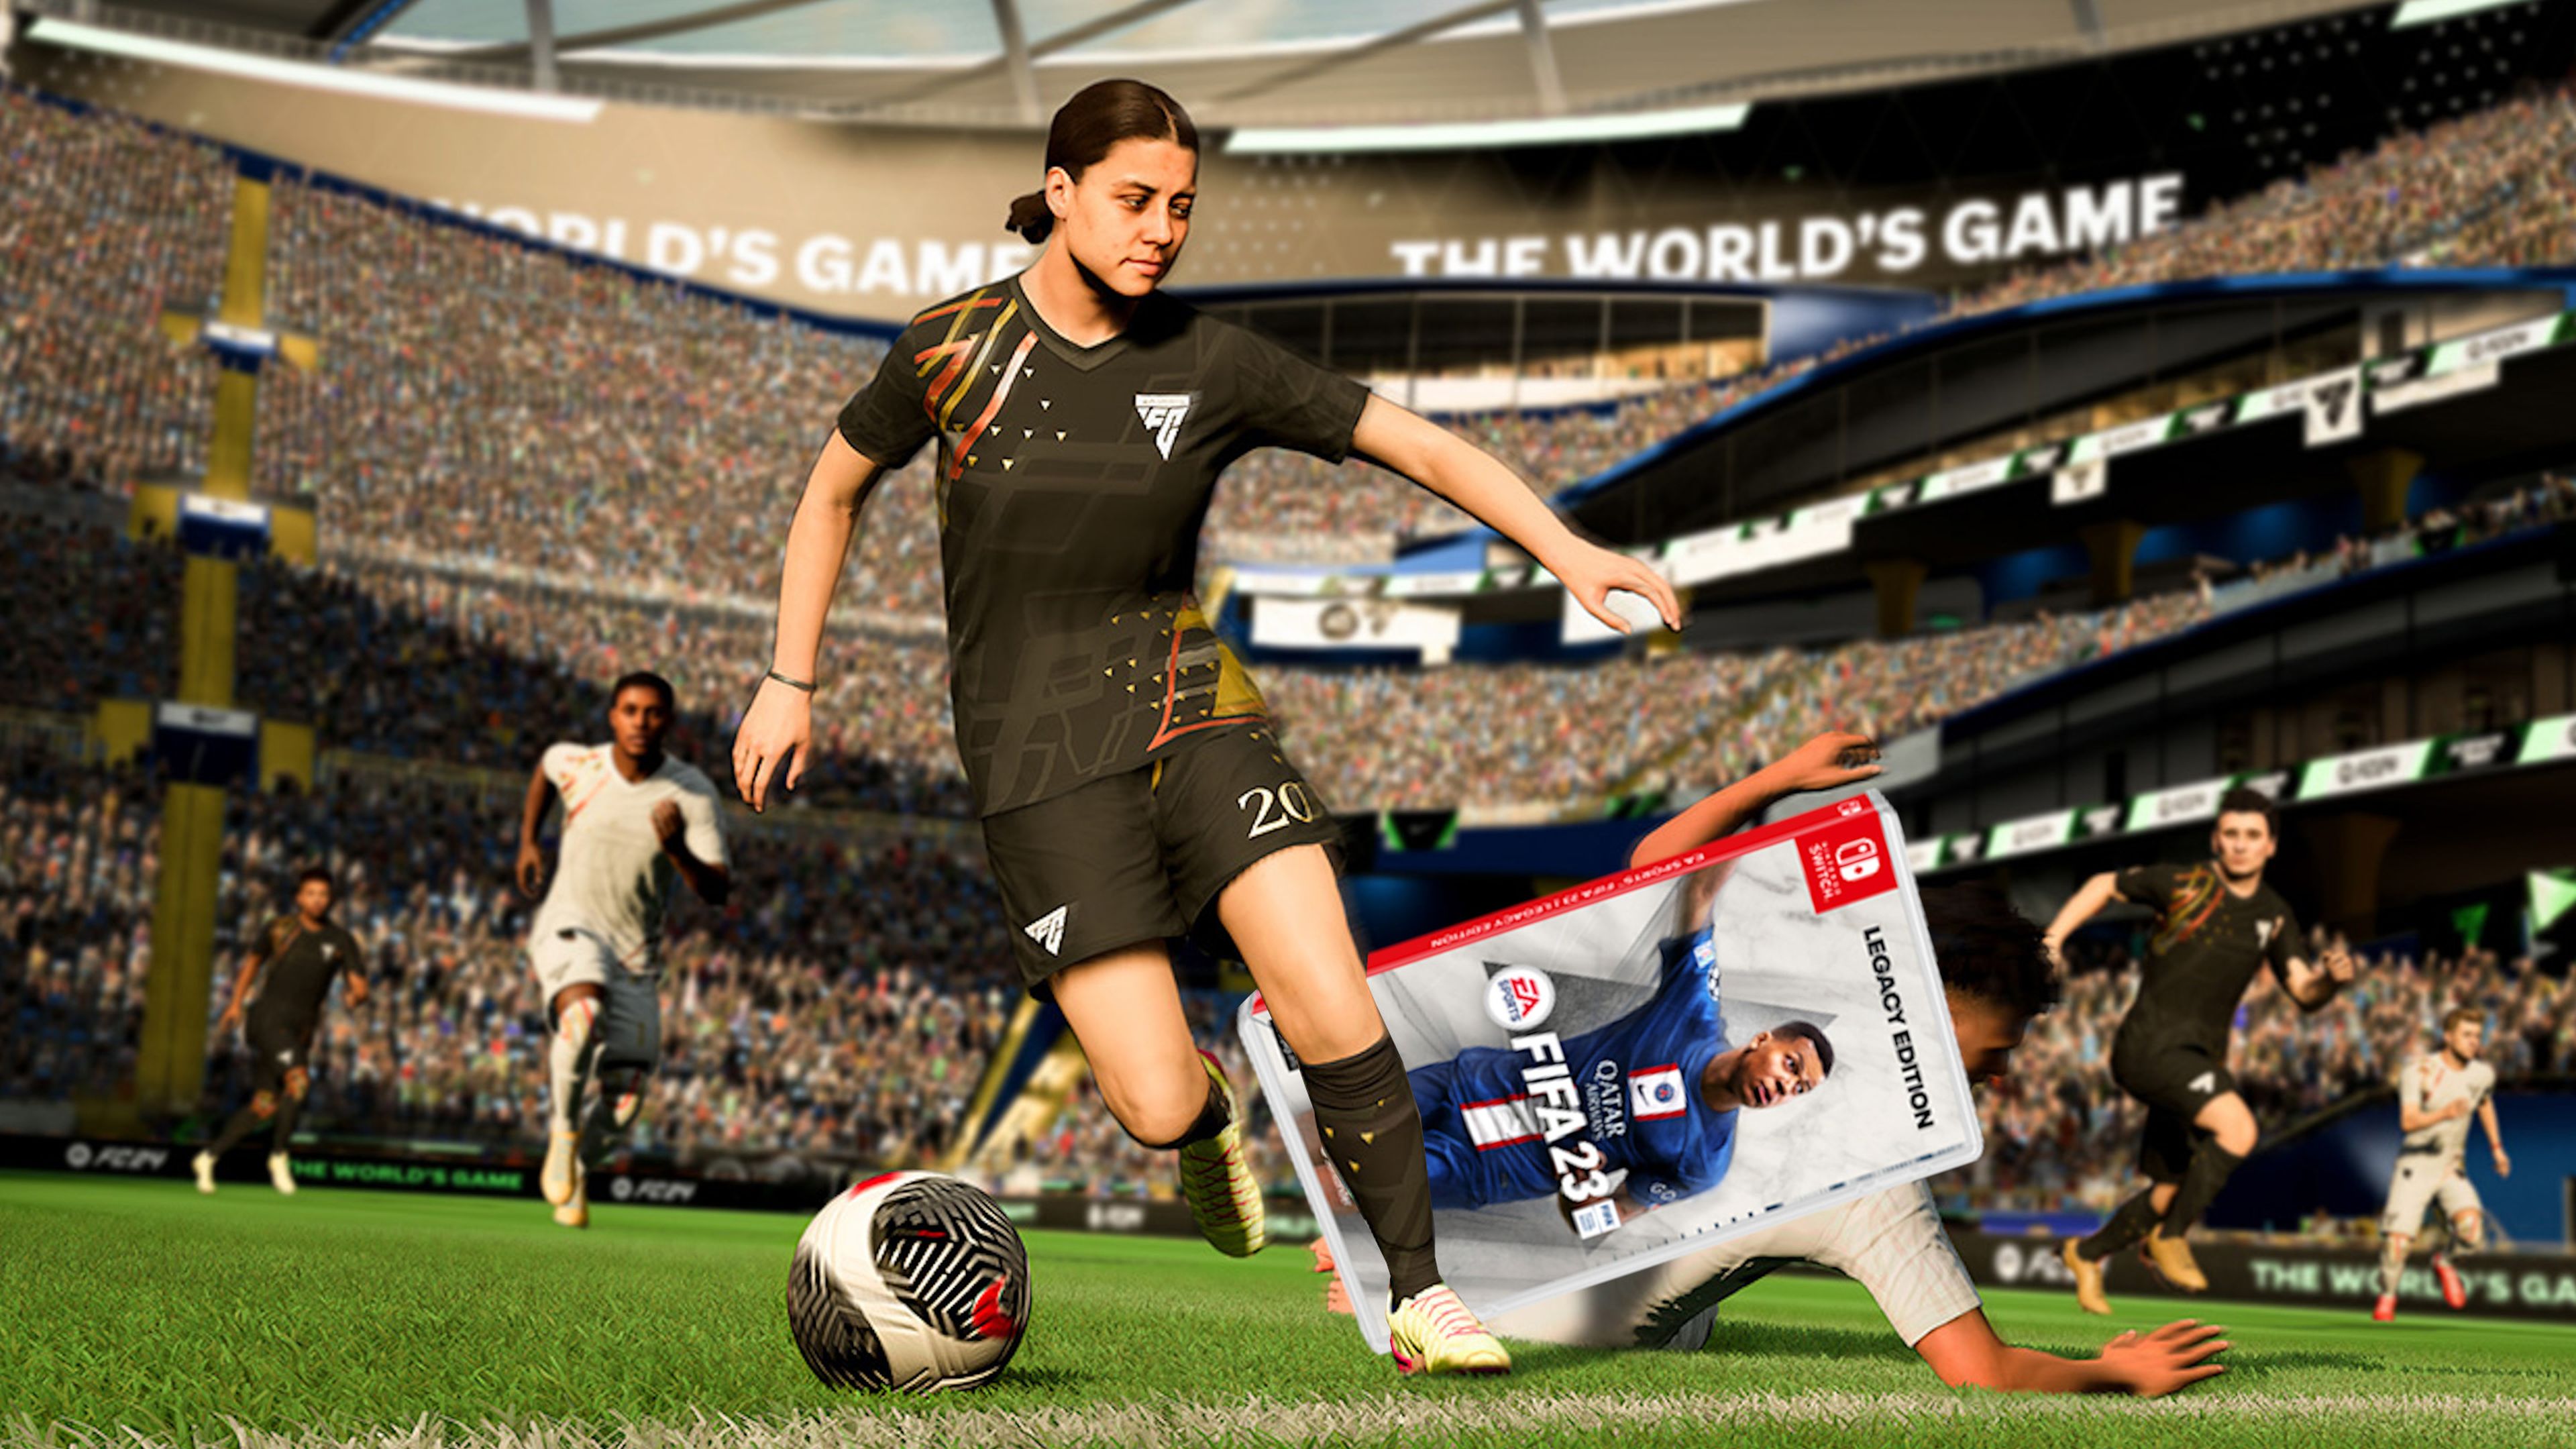 EA Sports FC 24 en Switch, diferencias con PlayStation, Xbox y PC